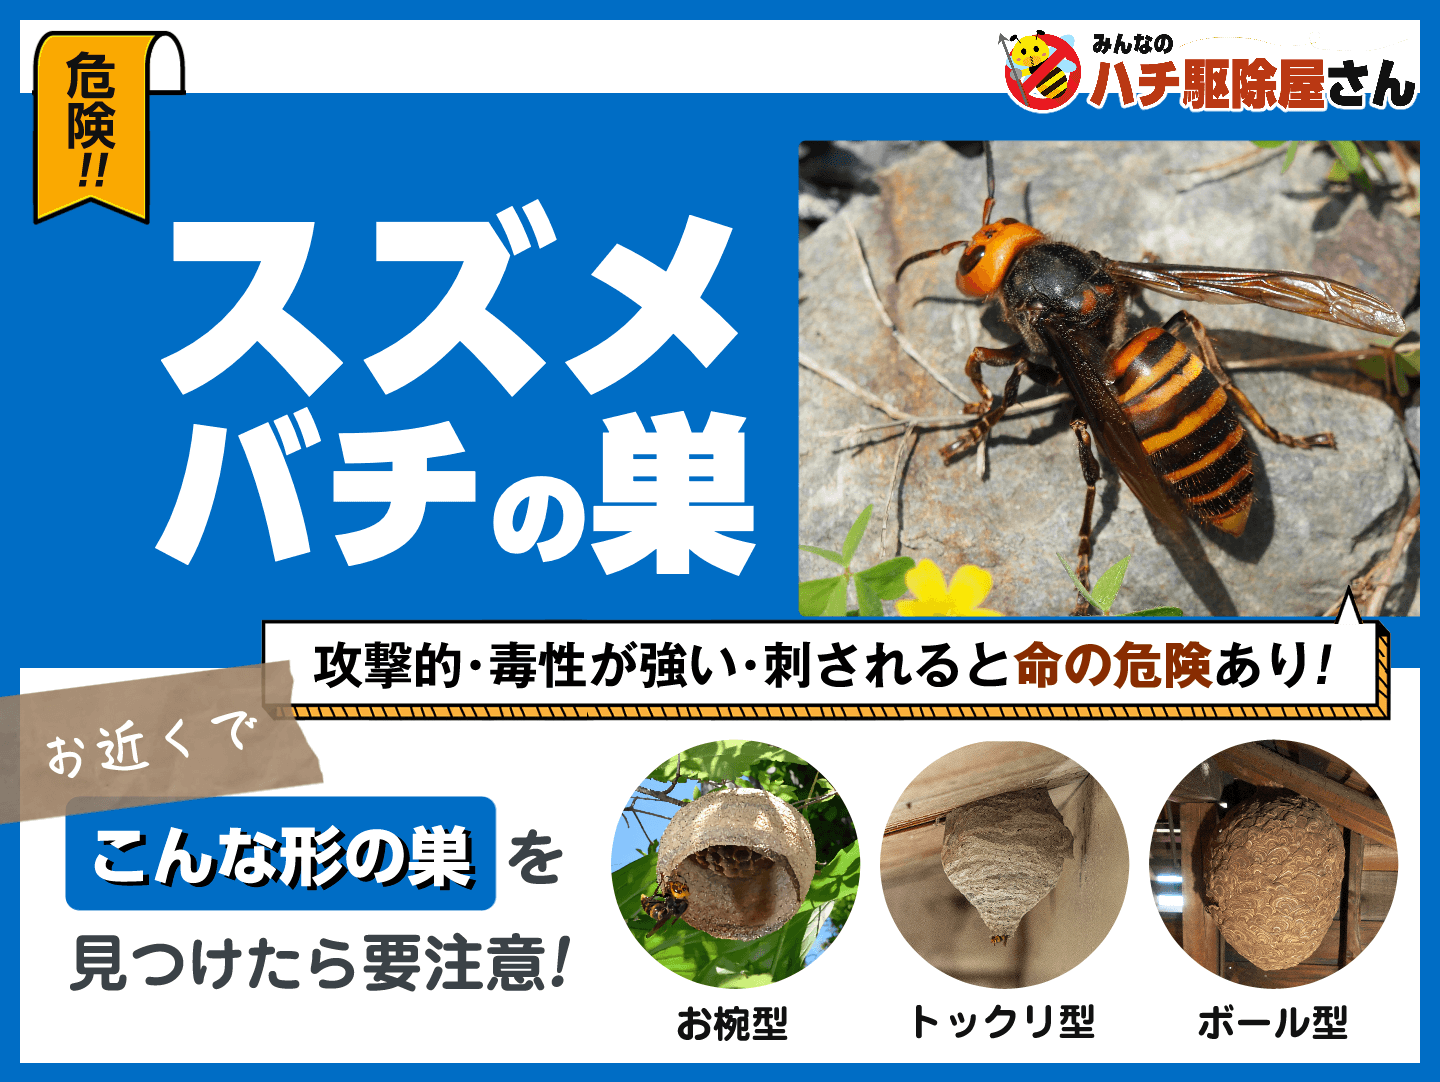 危険！スズメバチの巣